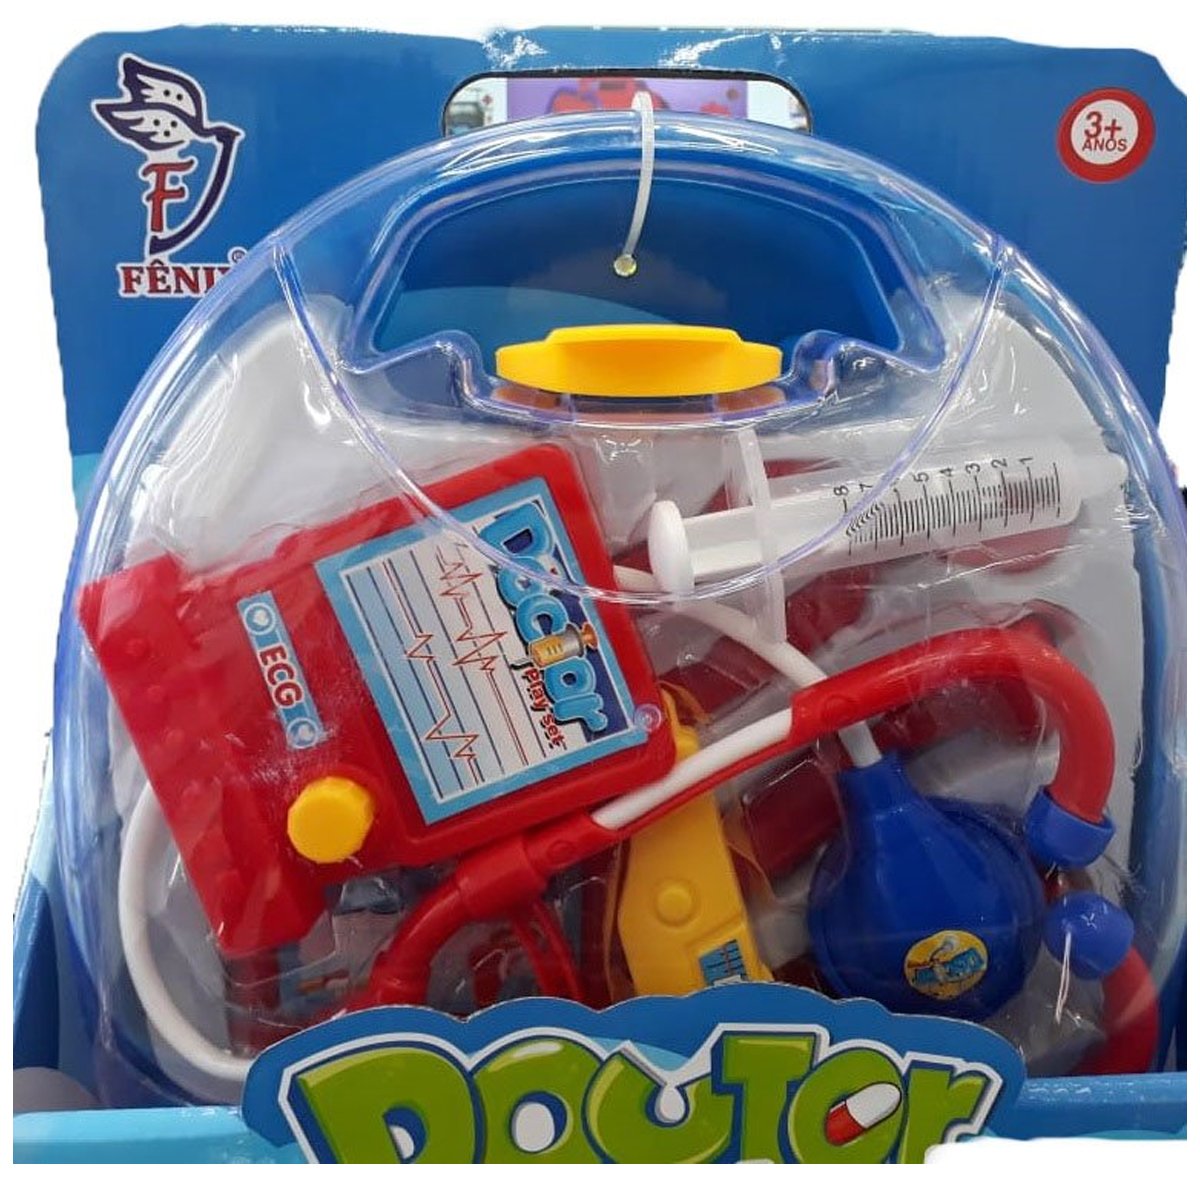 Kit Médico Brinquedo Infantil com Maleta Doutor Fenix 10 Peças Azul e Vermelho - 7